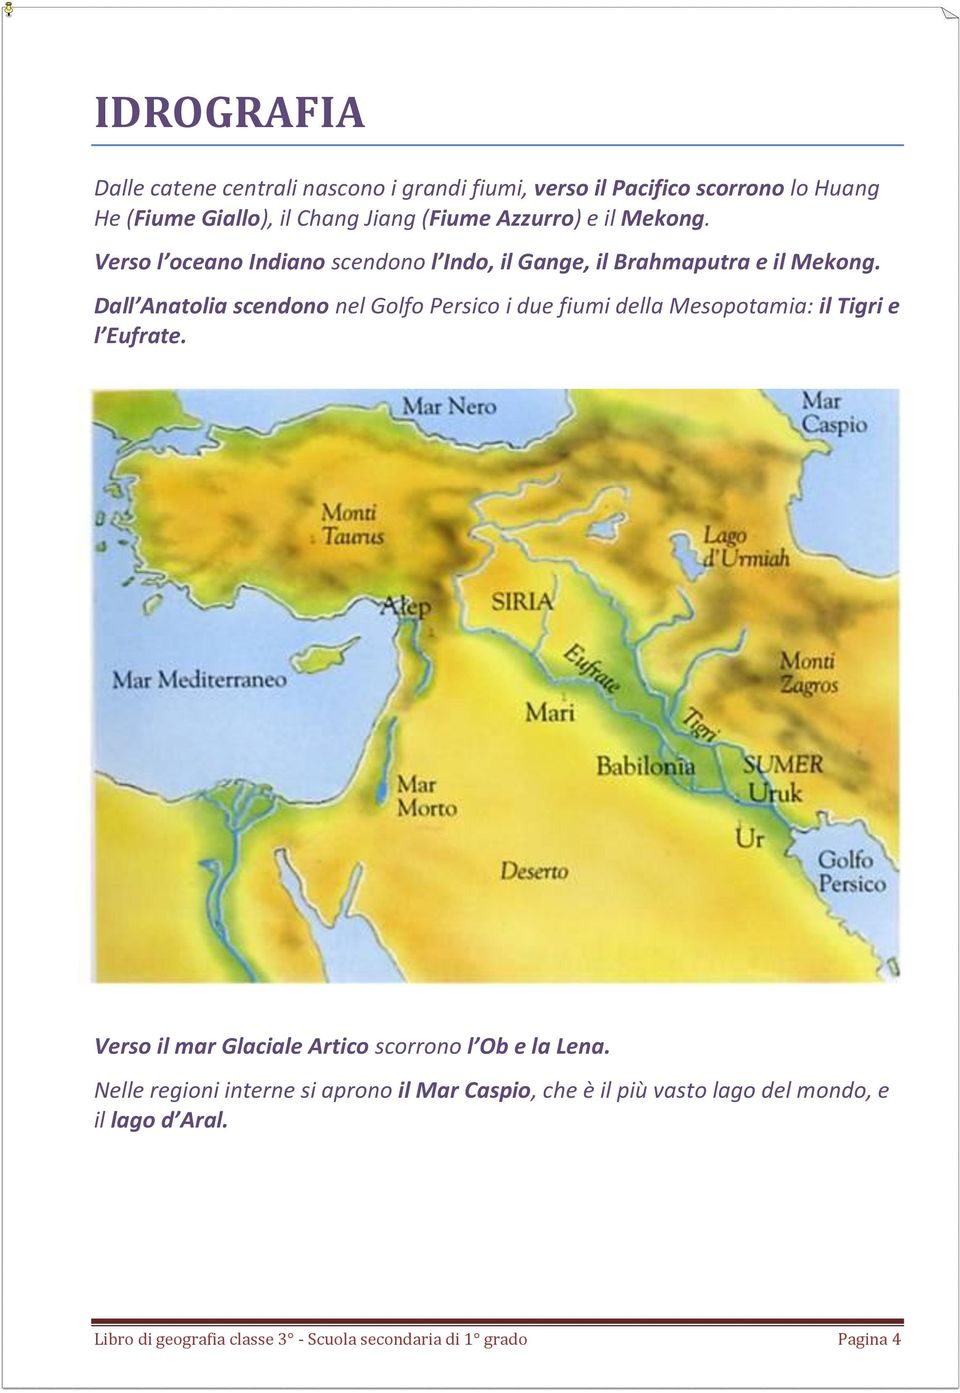 Dall Anatolia scendono nel Golfo Persico i due fiumi della Mesopotamia: il Tigri e l Eufrate.